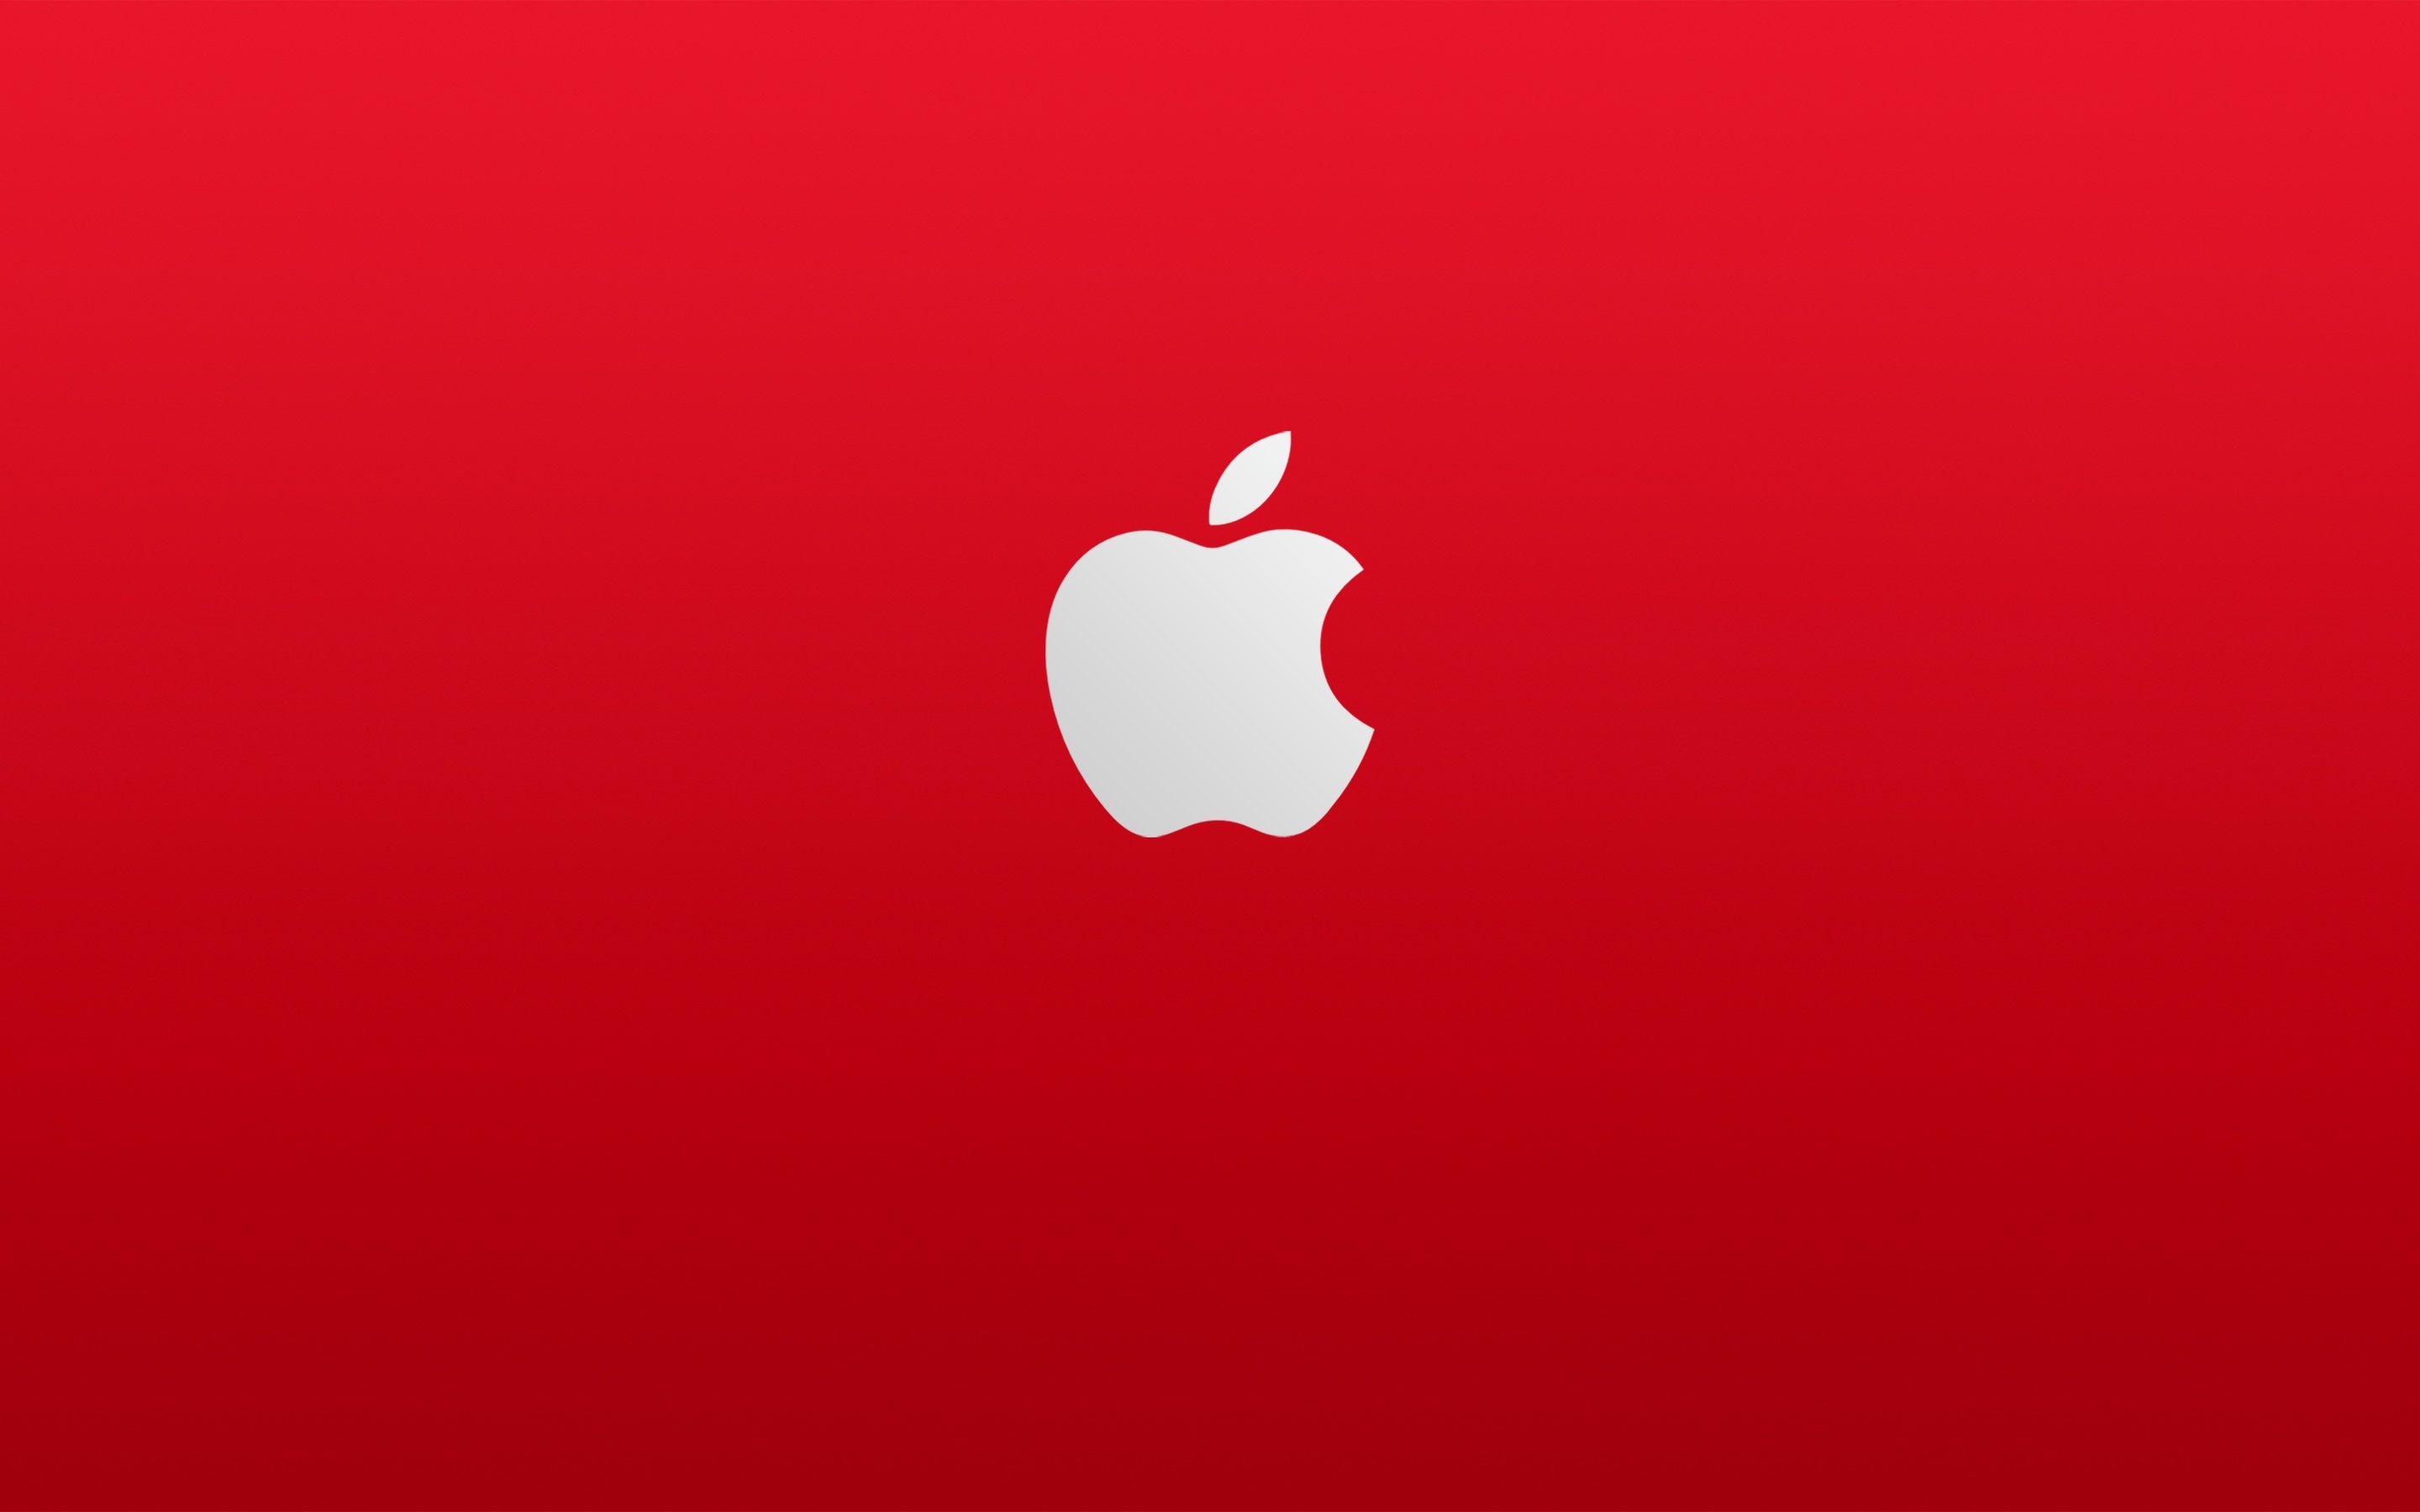 Логотип apple на красном фоне